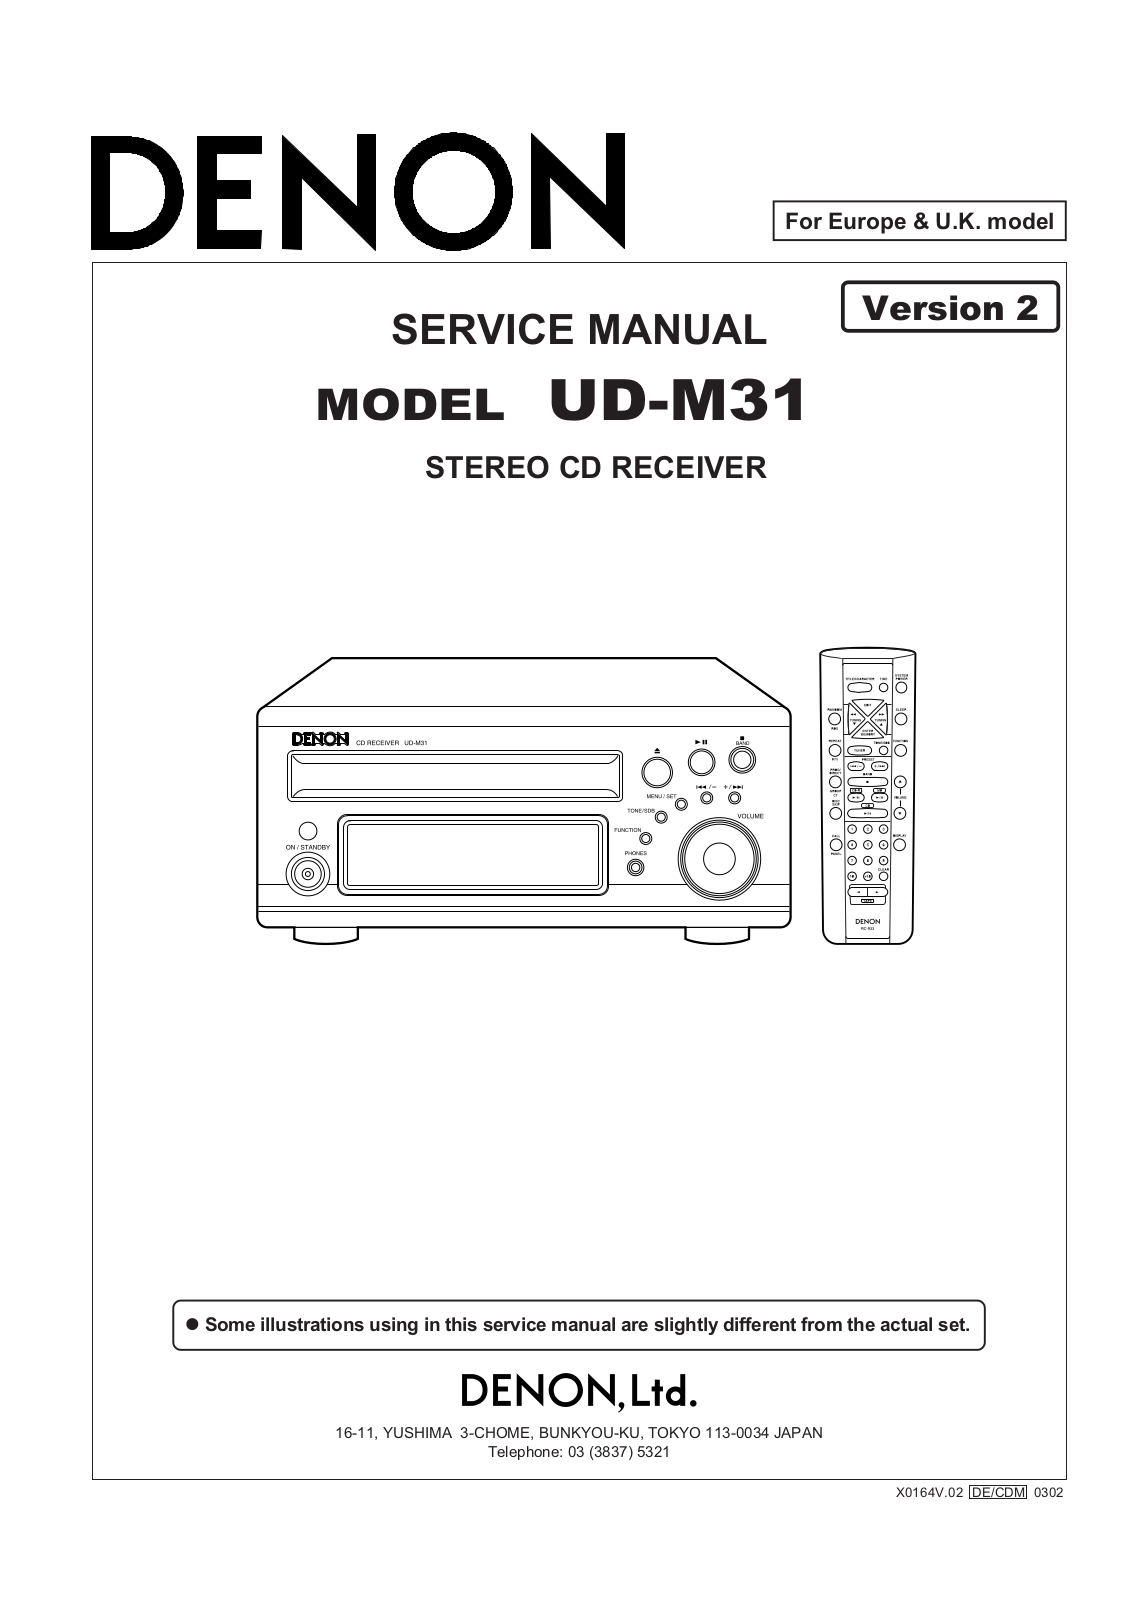 Denon UD-M31 Service Manual